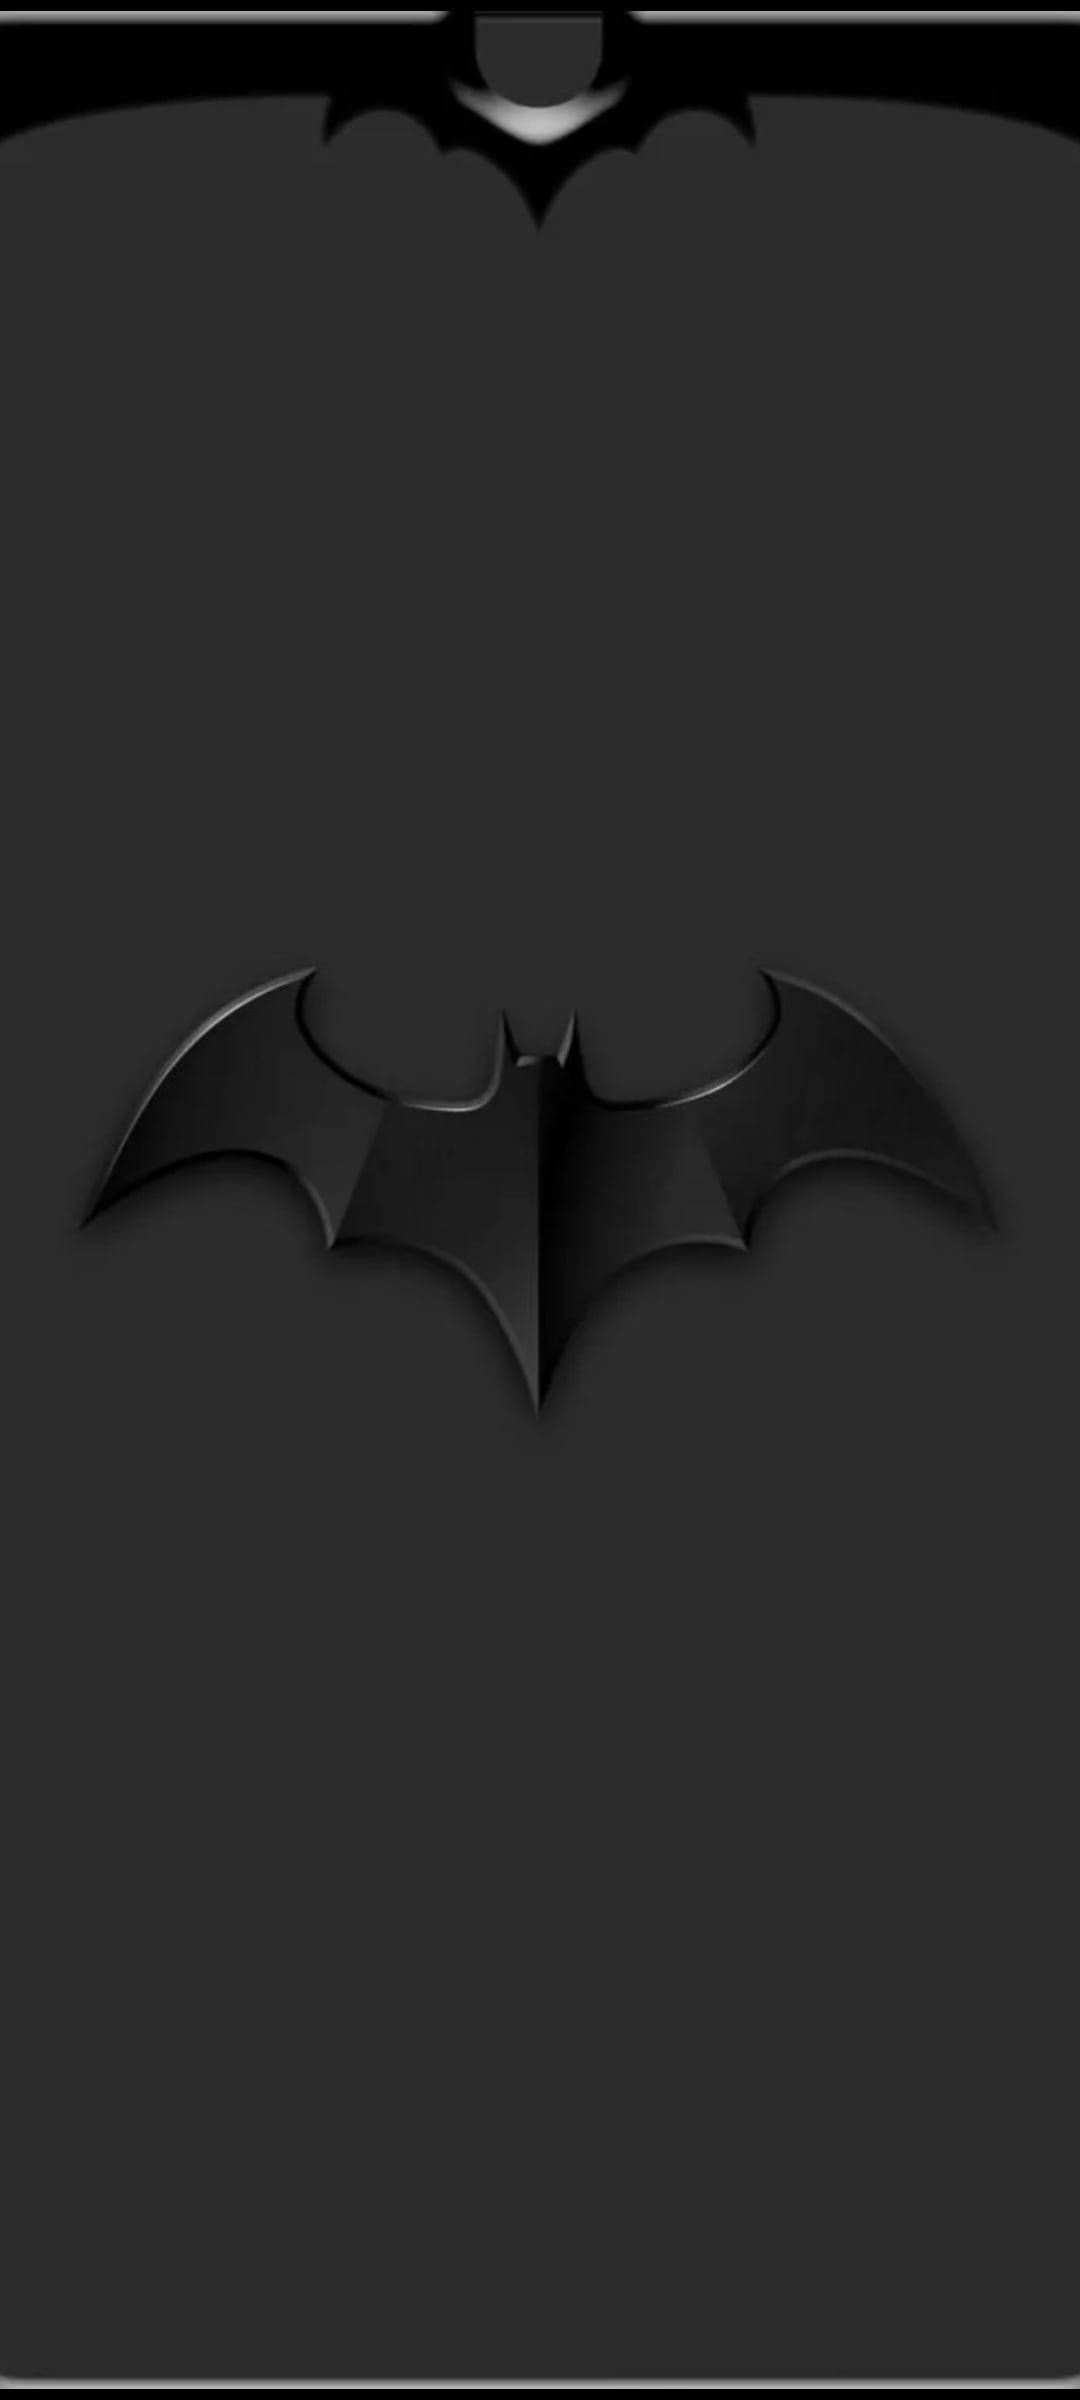 Download Dot Notch Batman's Bat Symbol Wallpaper 